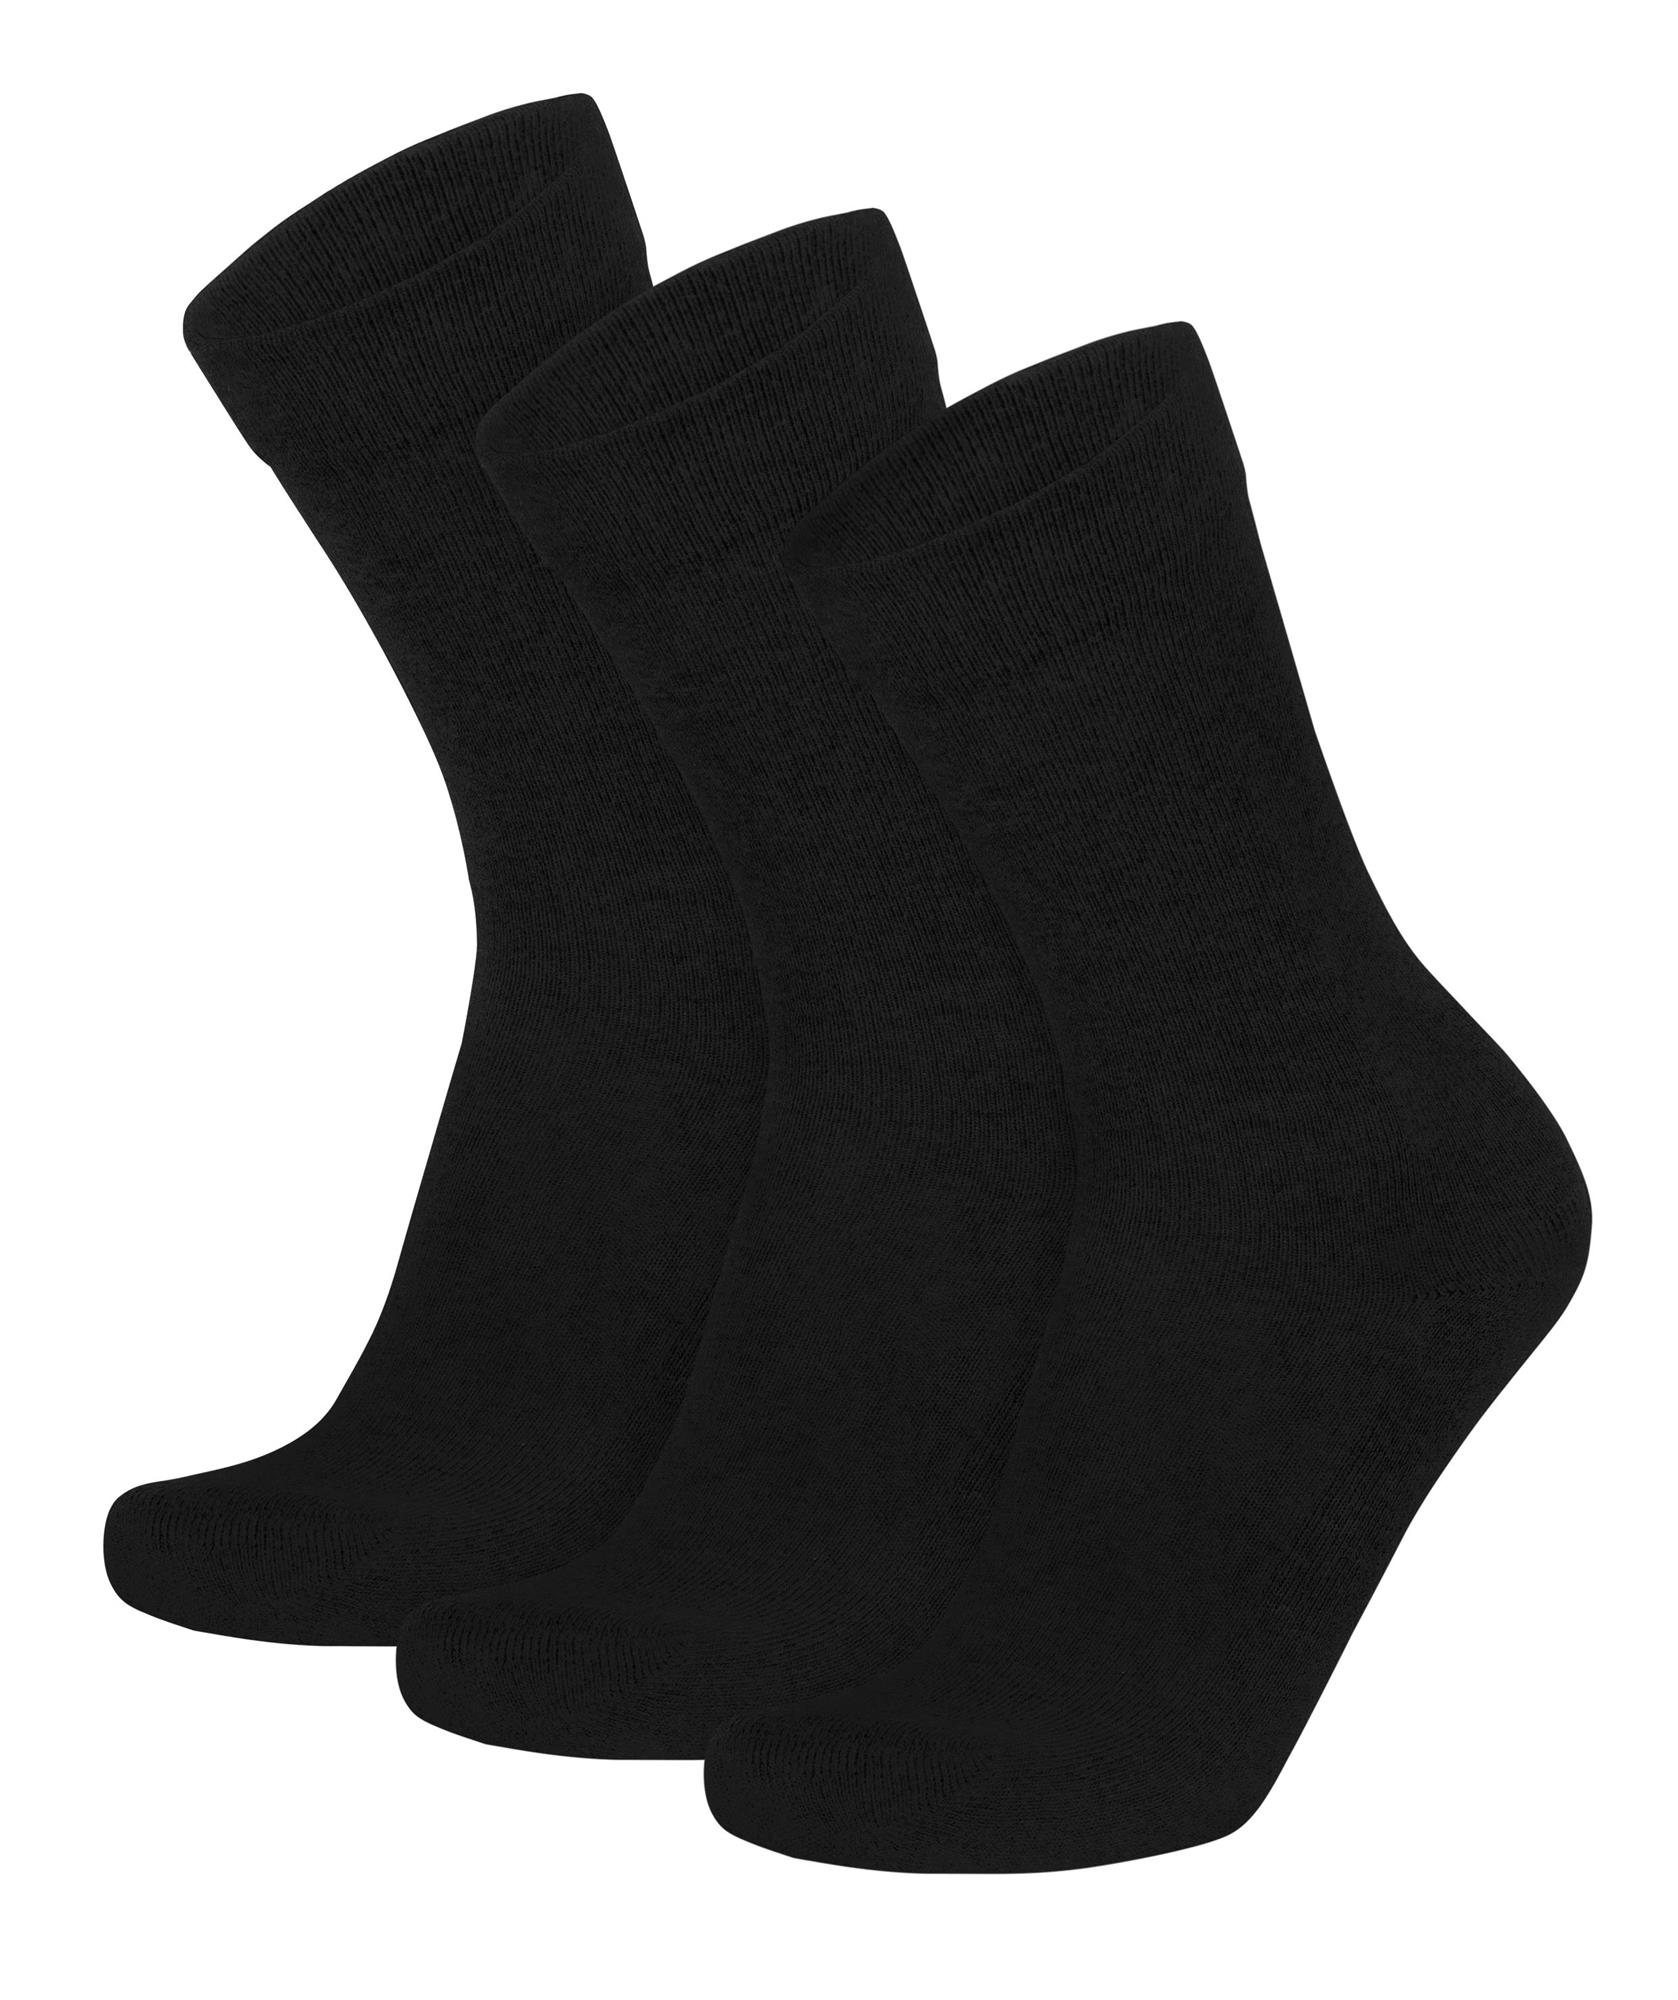 Diabethiker Socken ohne Gummi mit Frotteesohle 6 Paar für Herren und Damen